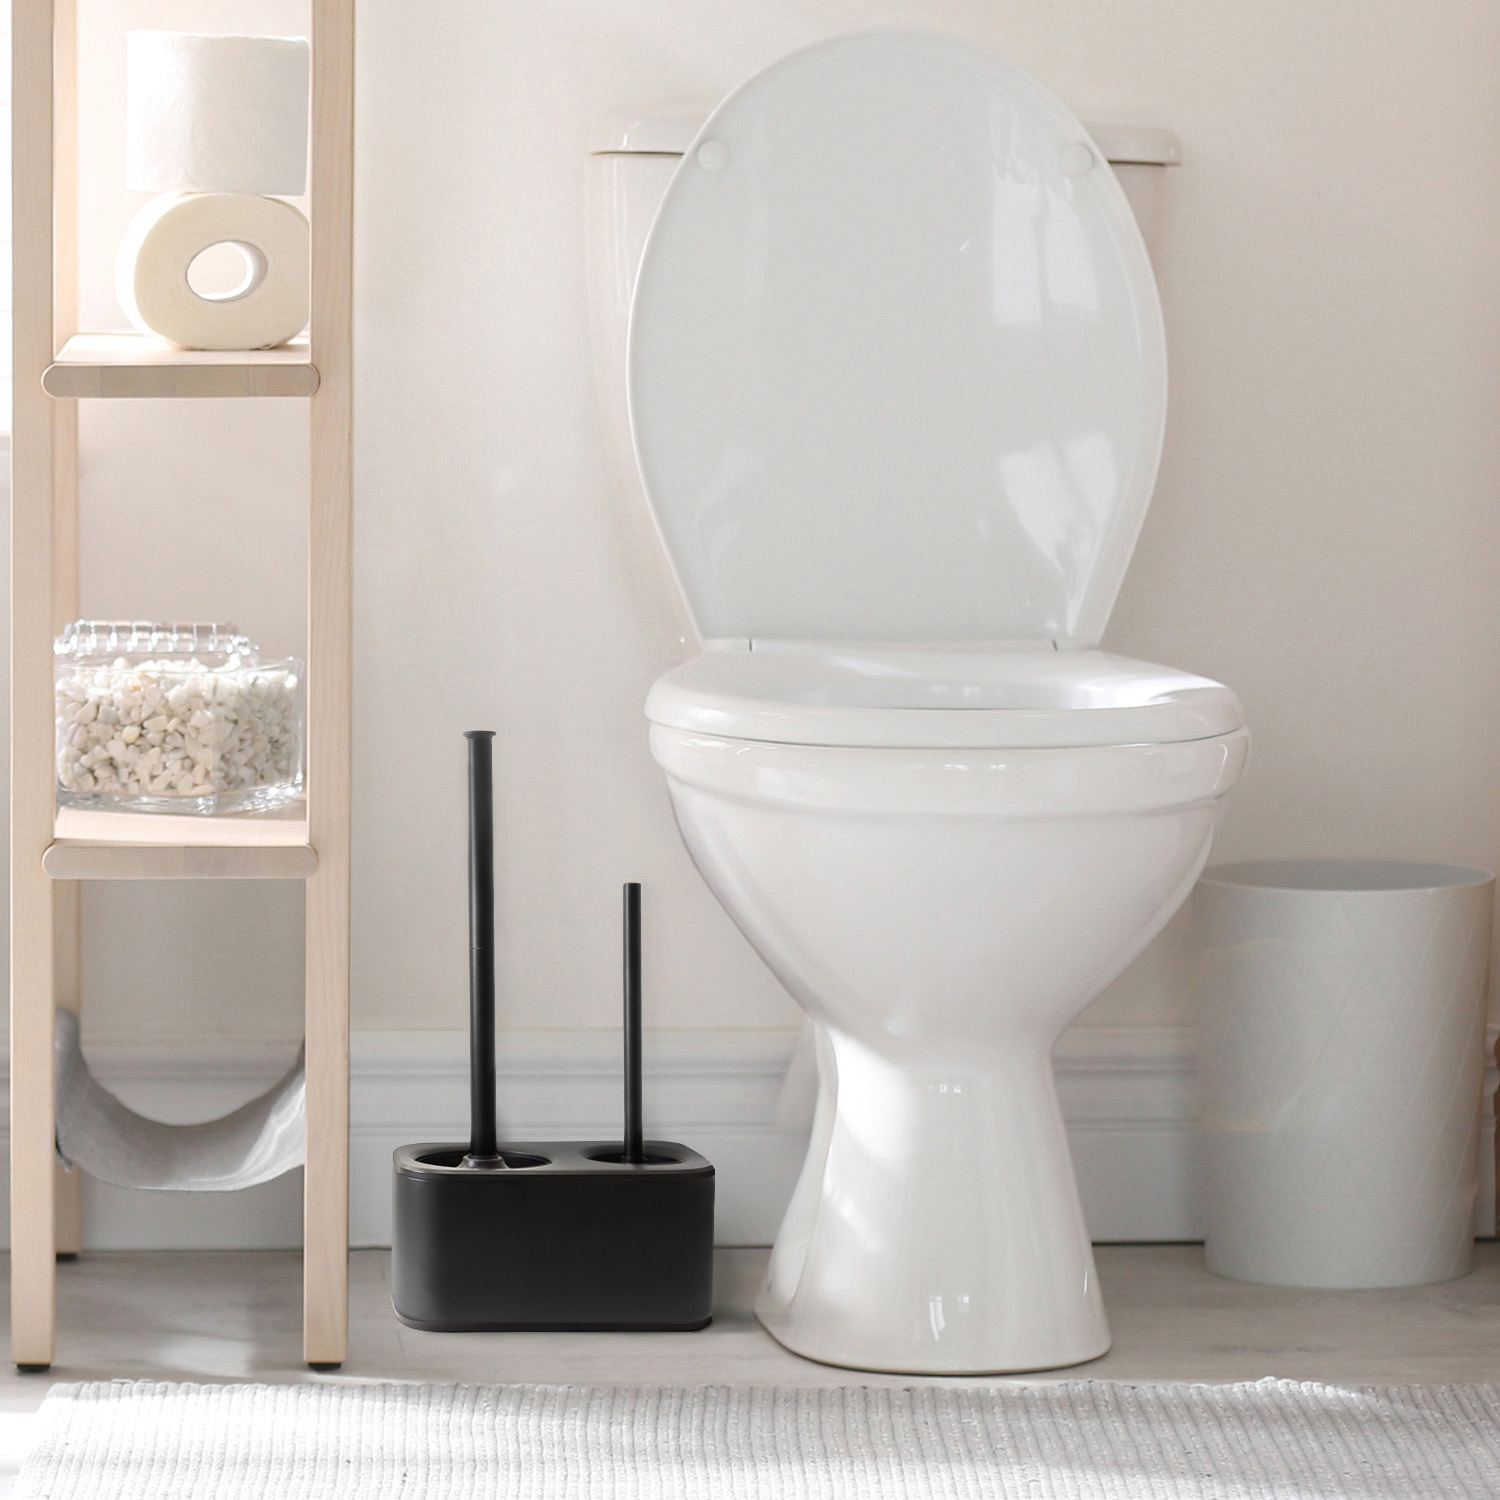 modern sleek toilet bowl brush and Toilet plunger combo - Black